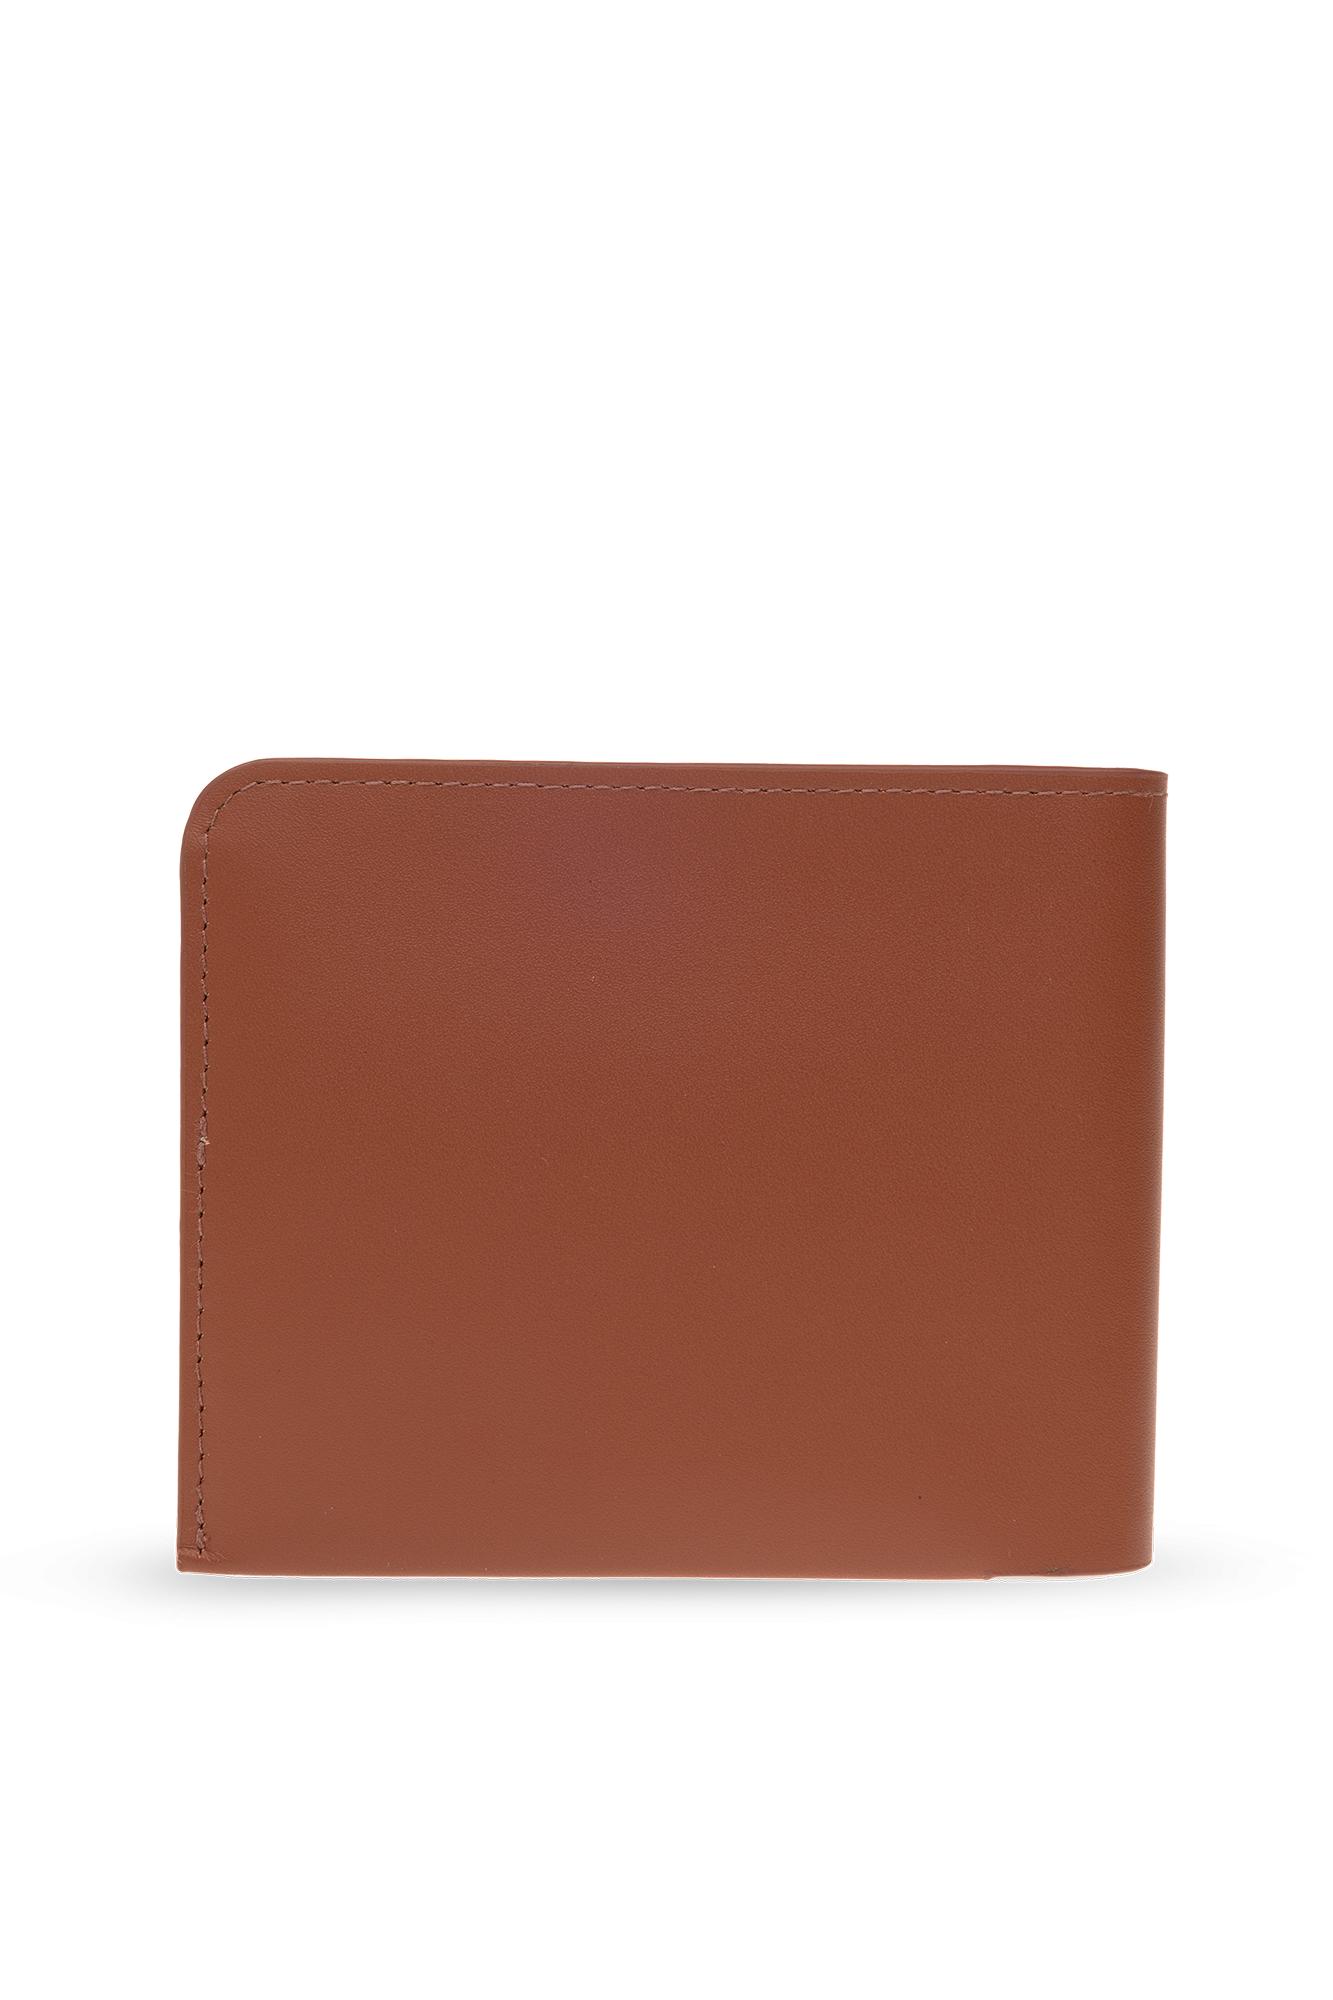 Dries Van Noten Leather Wallet in Brown | Lyst